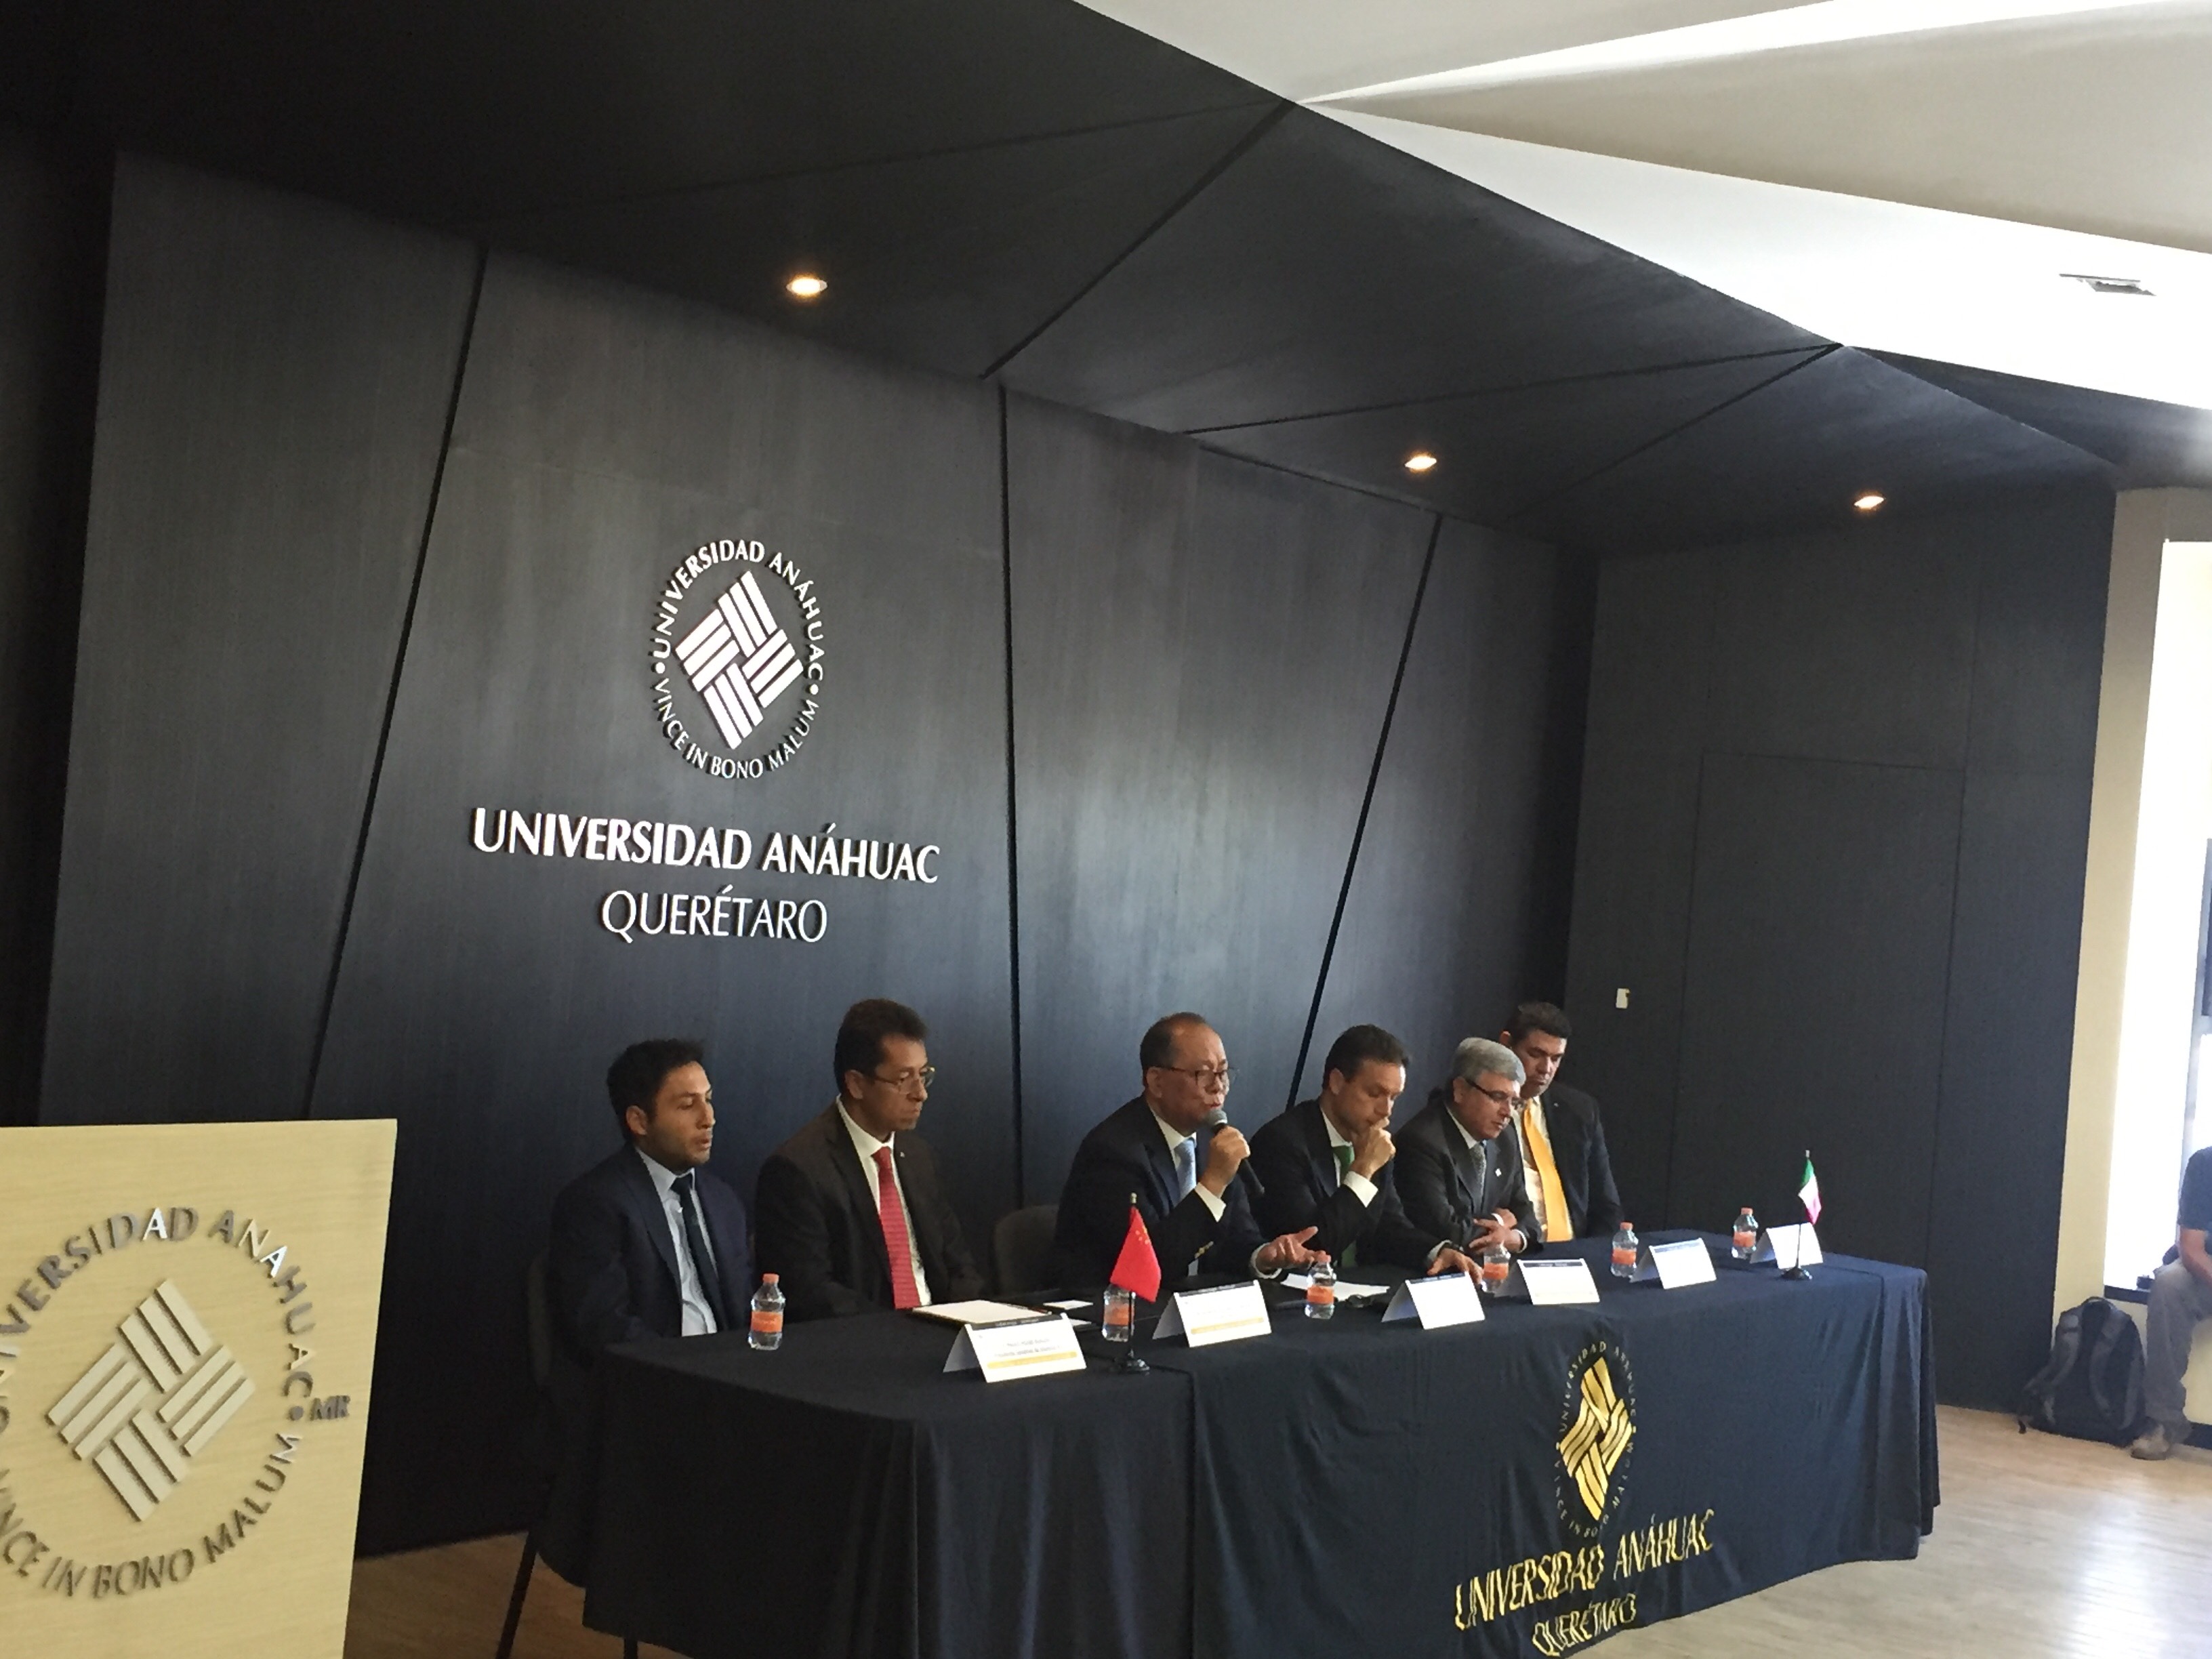  Embajador de China en México visita Universidad Anáhuac campus Querétaro